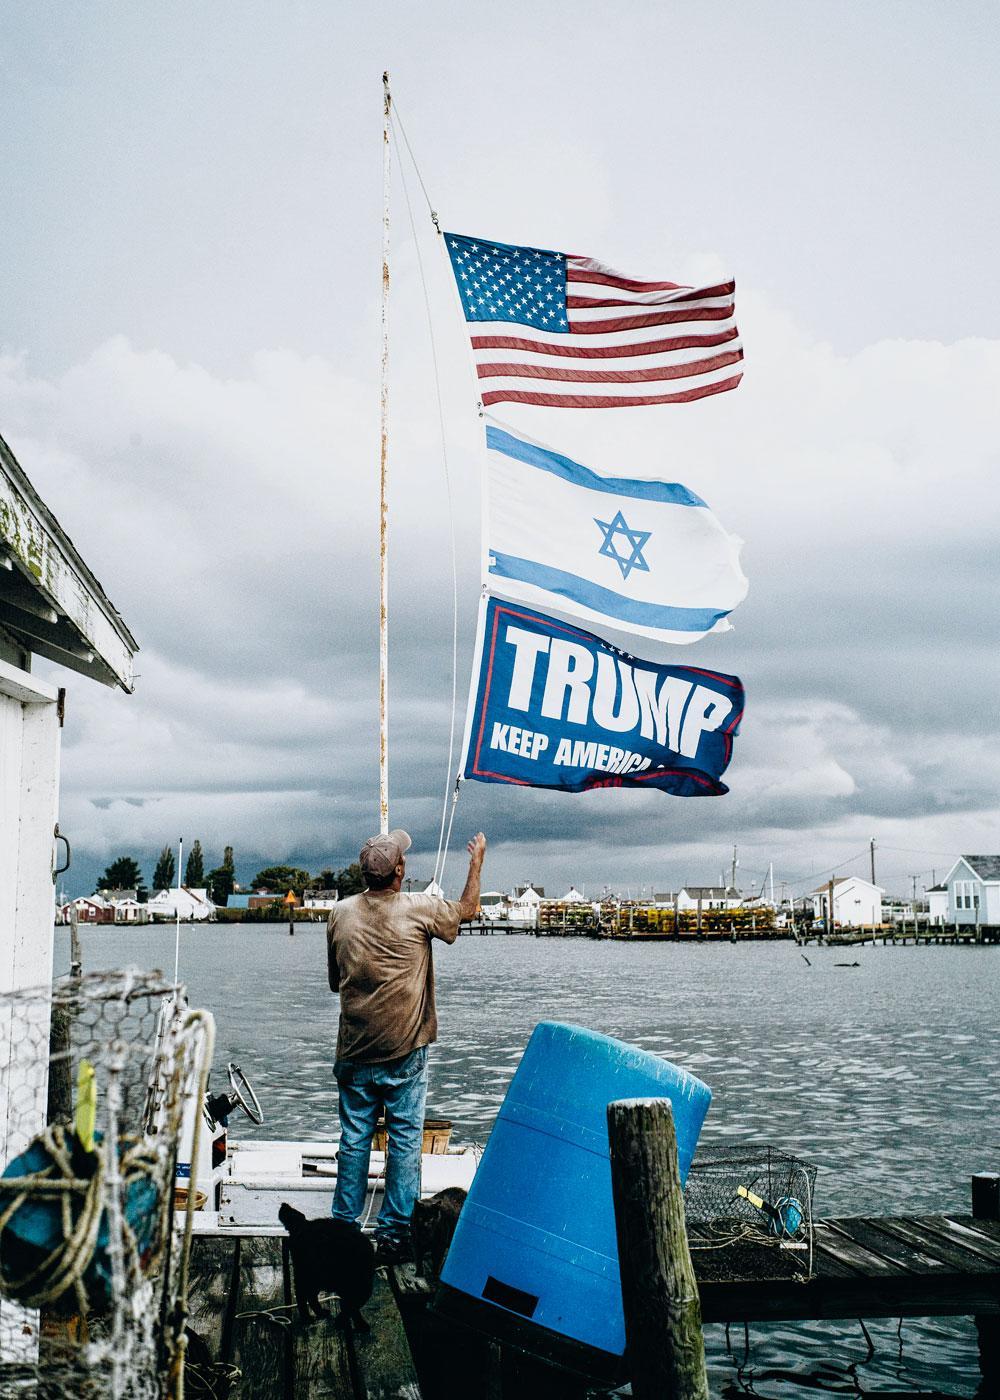 Très actifs sur l'île, les évangélistes témoignent d'un soutien indéfectible à Israël, dont le drapeau flotte à côté de celui des Etats-Unis, non loin de la maison du maire.